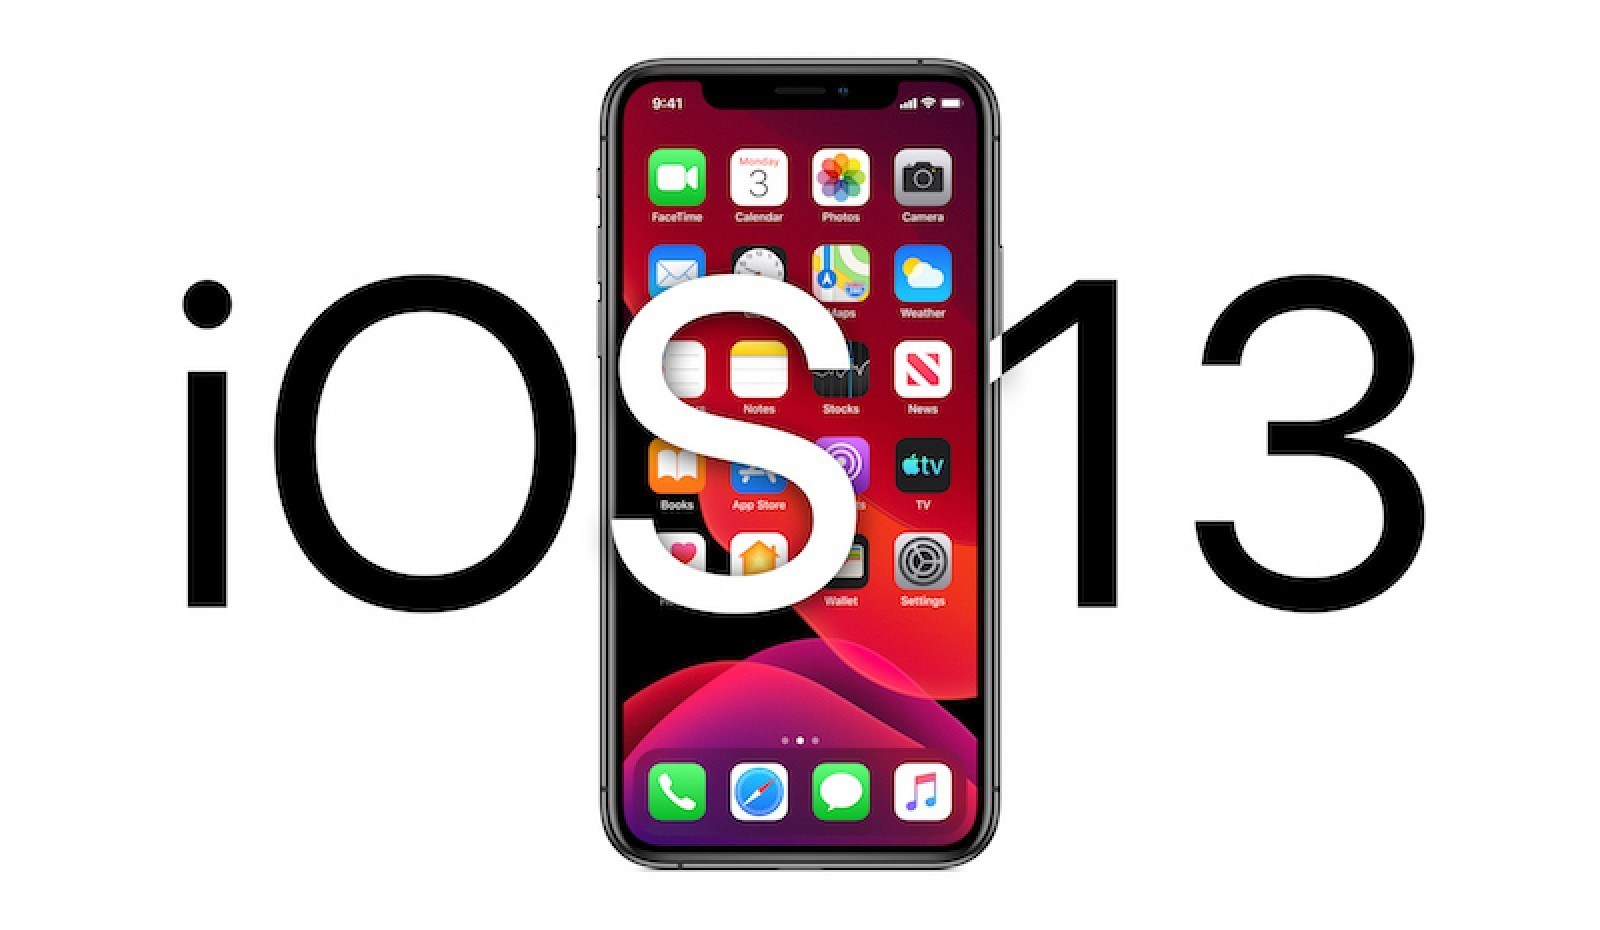 ชวนรู้จัก 13 ฟีเจอร์สุดเจ๋งของ iOS 13 เพื่อการใช้งานง่ายยิ่งขึ้น